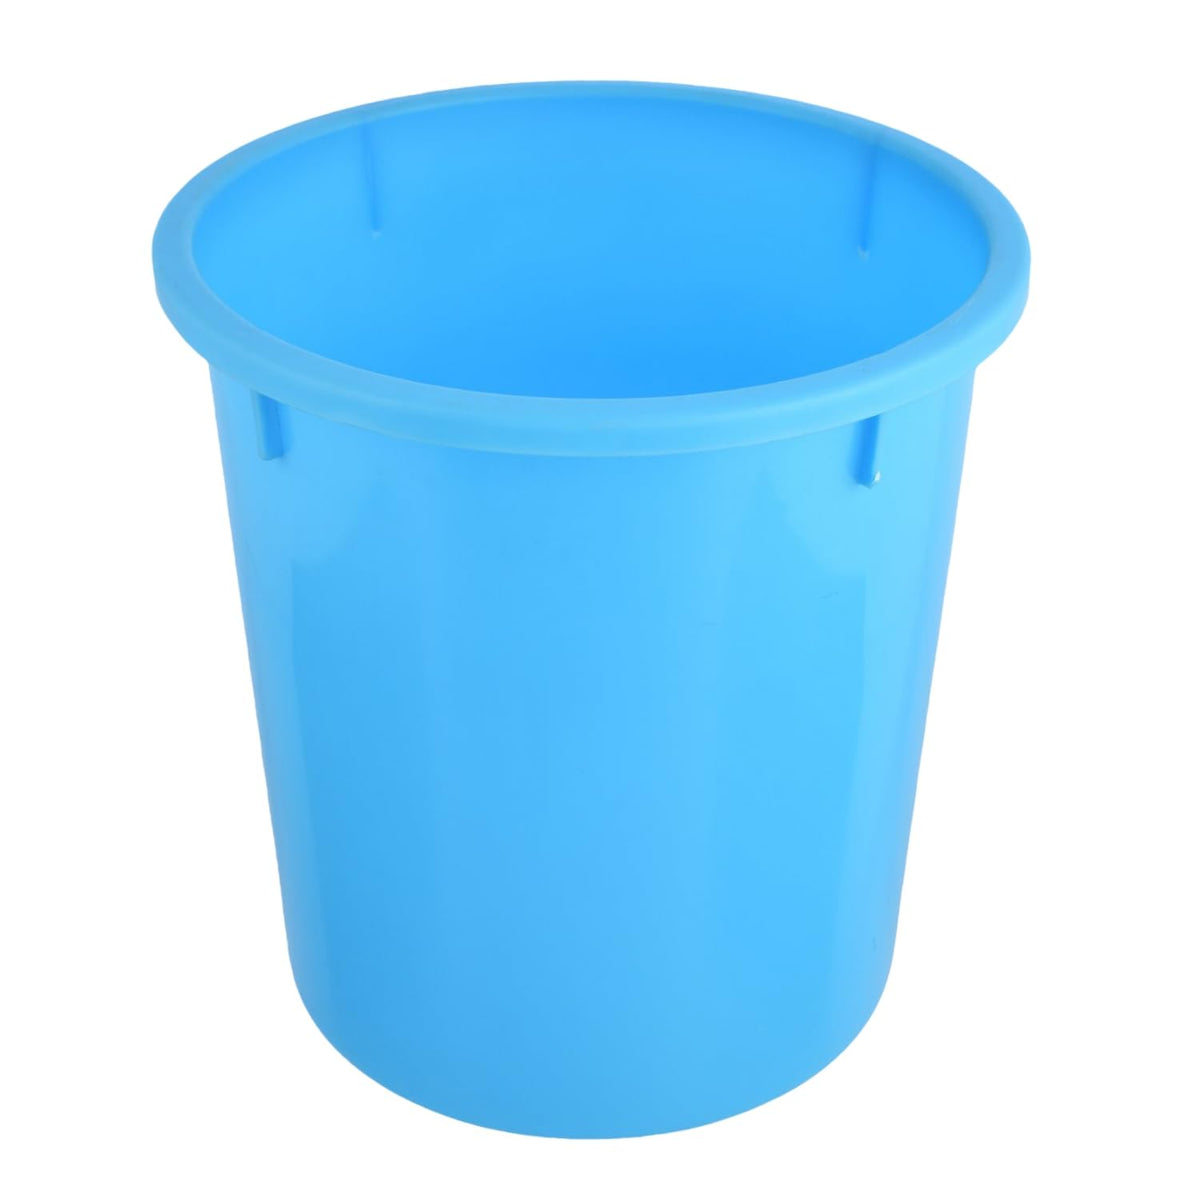 Heart Home Dustbin|Open Dustbin|Plastic Garbage Dustbin|Dustbin for Kitchen|Dustbin for Bathroom|Office Dustbin|Plain Sada Dustbin|5 LTR|Light Blue